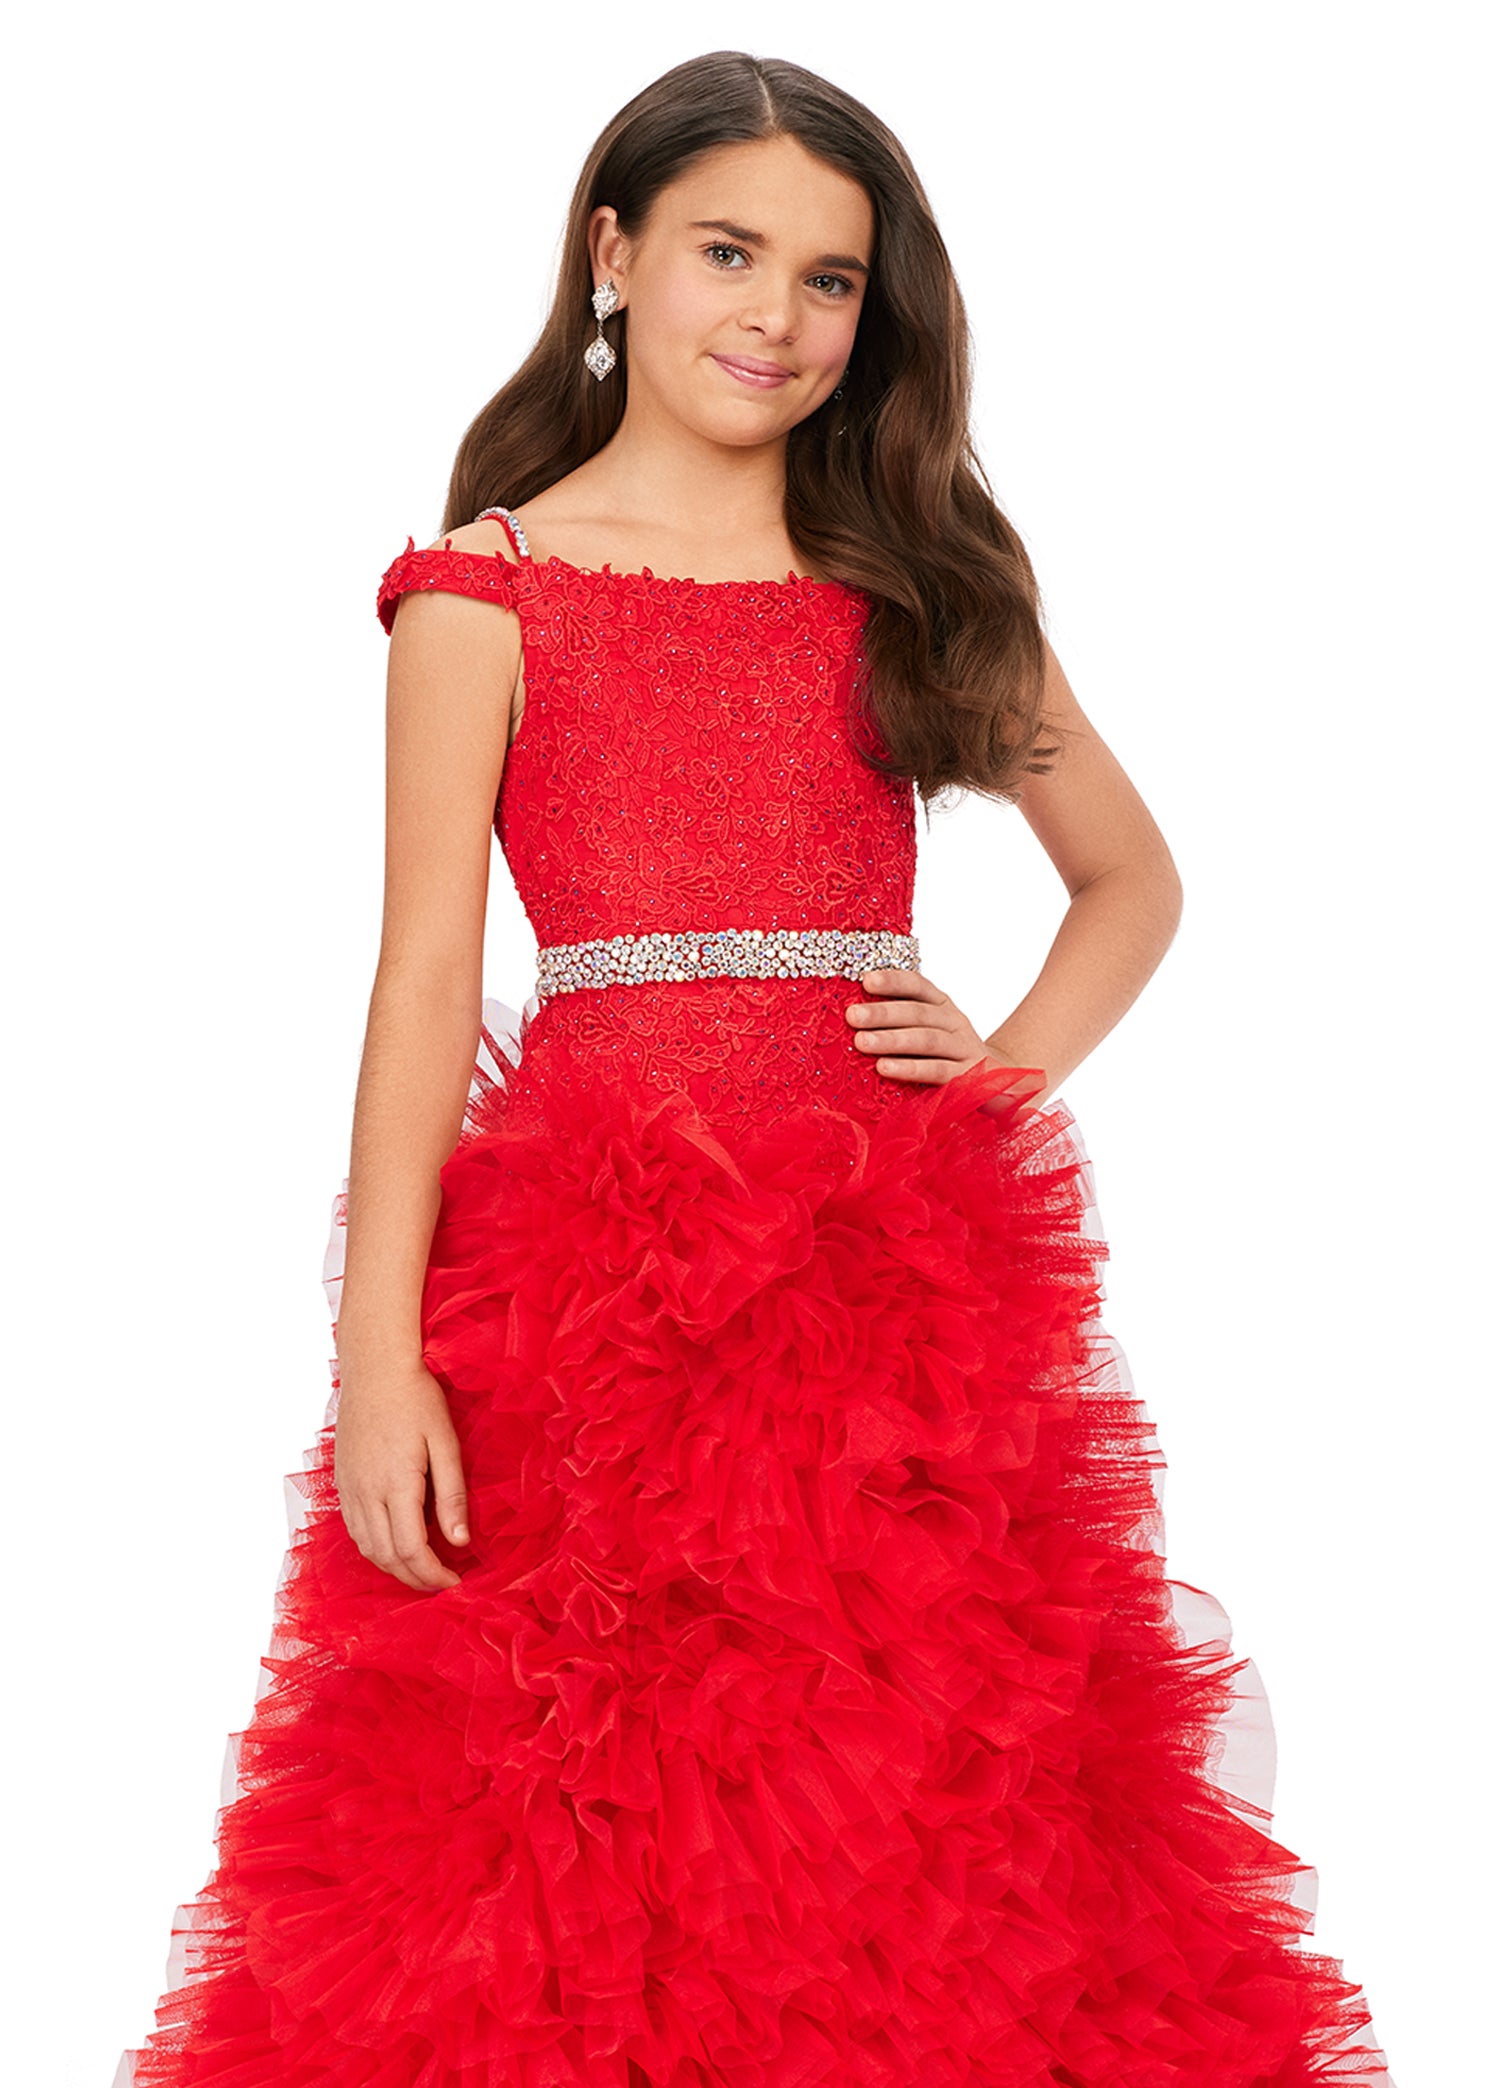 Tulle-skirt Dress - Red - Kids